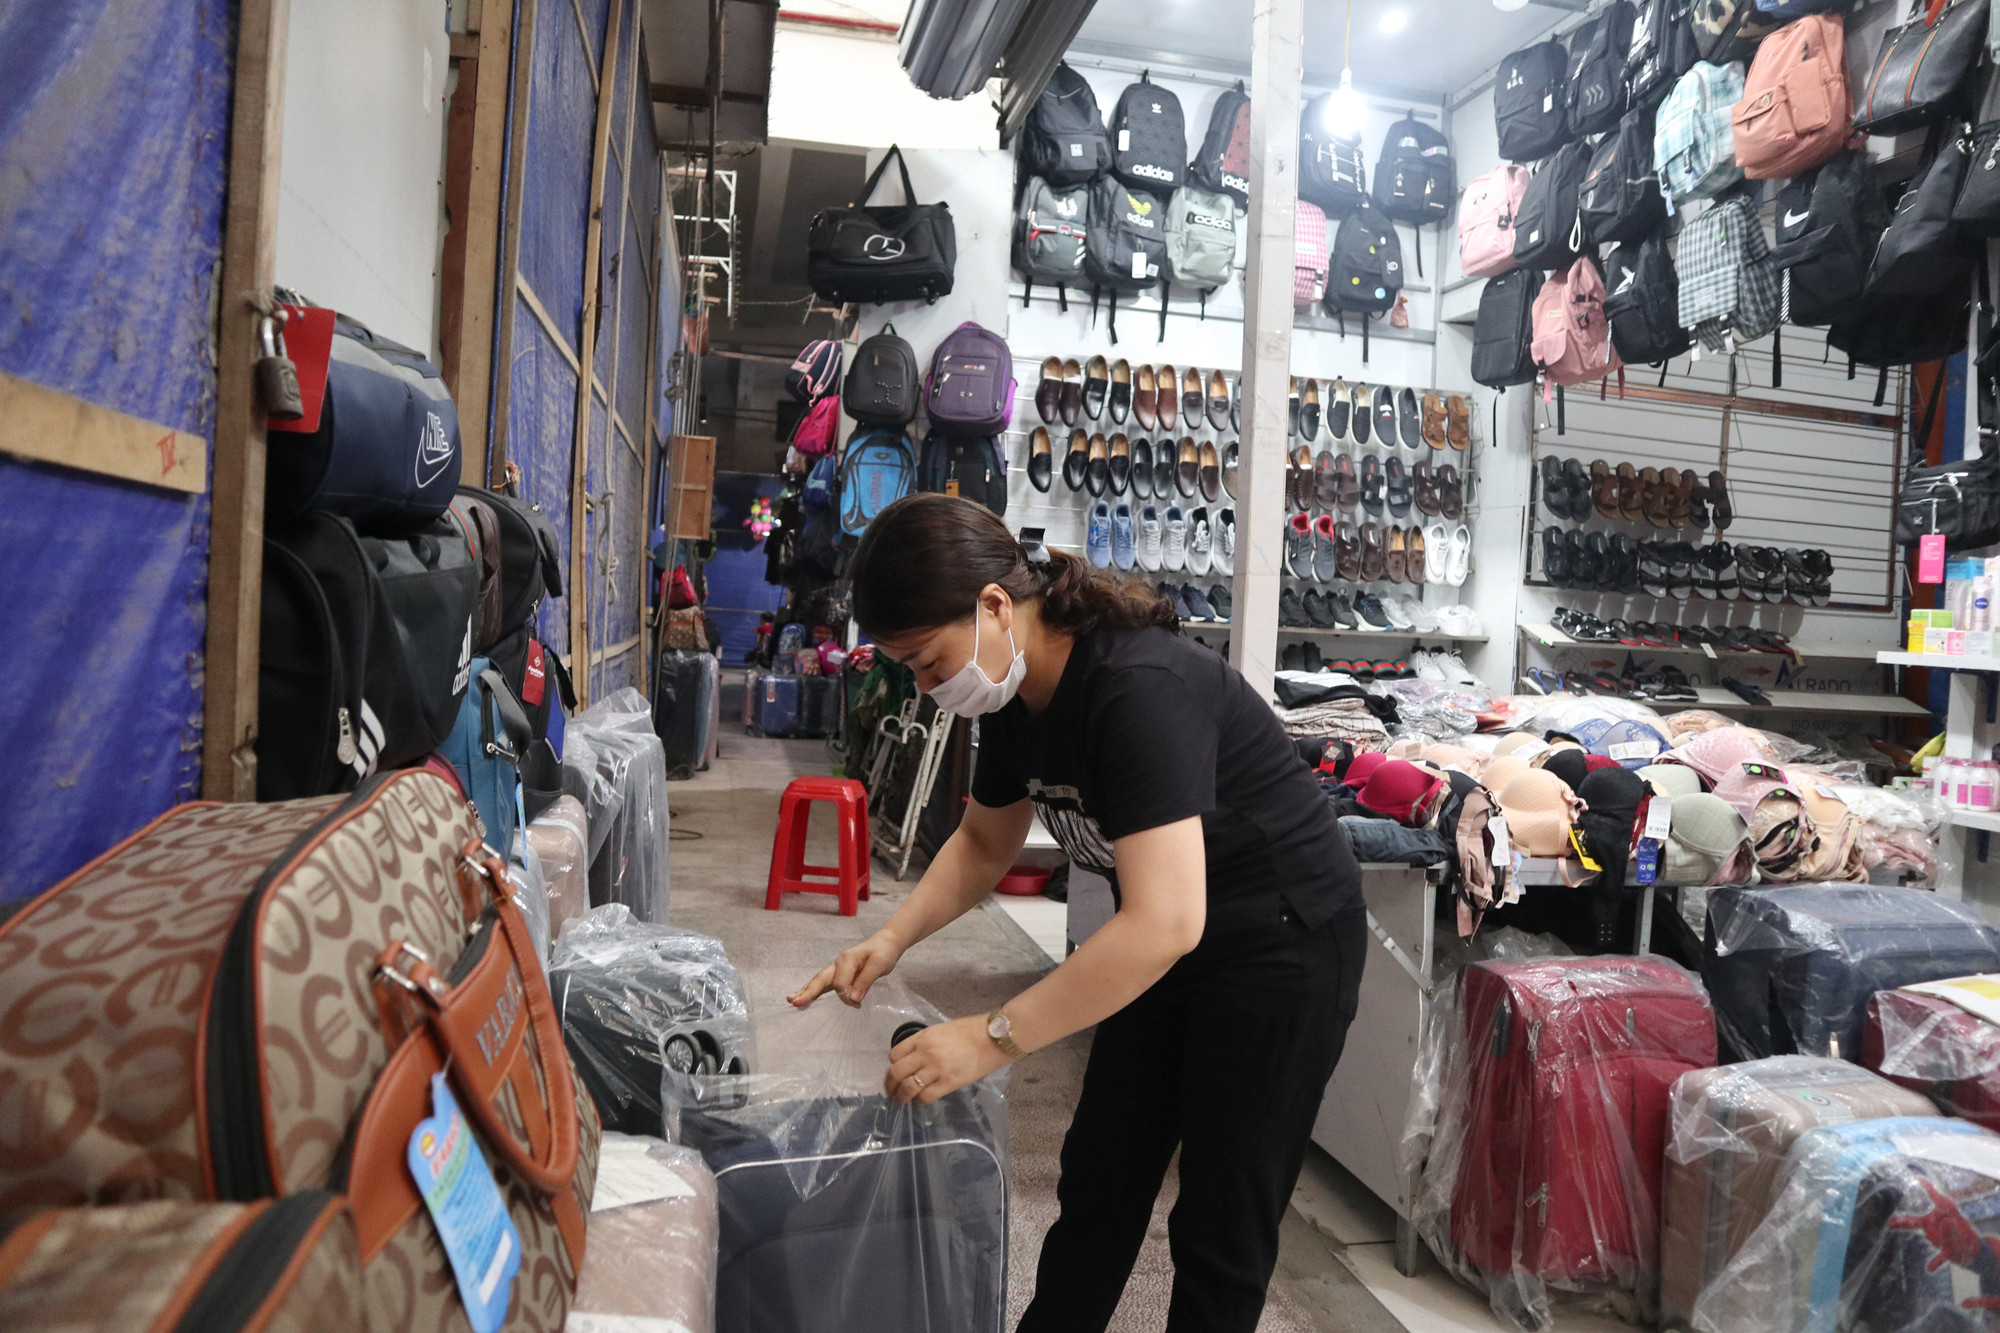 Ế ẩm, chị Loan, tiểu thương chợ Ga Vinh buộc phải cho 2 nhân viên nghỉ việc, tự mình dọn hàng, bán hàng và ship hàng khi khách có nhu cầu. Ảnh: Thanh Phúc